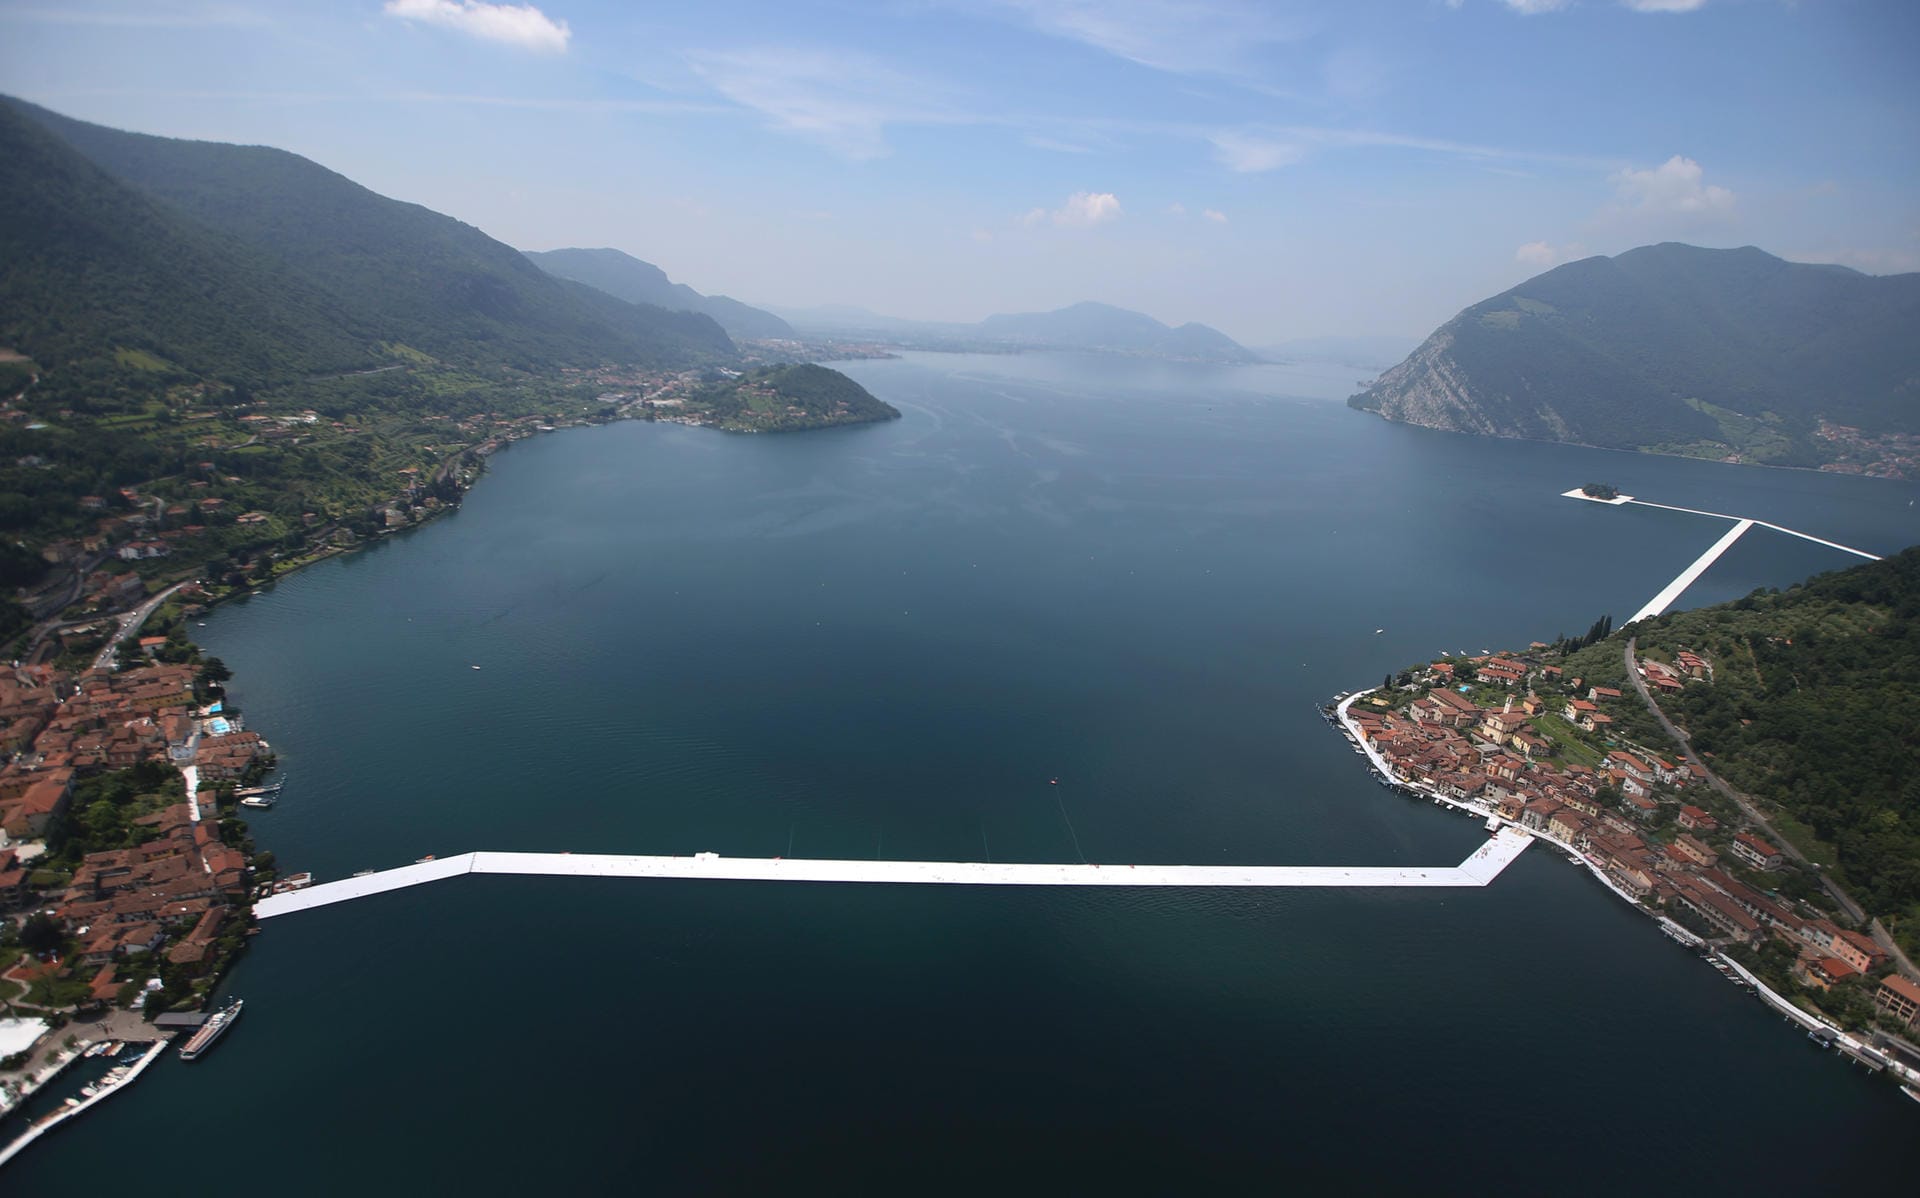 Der Iseosee ist ein recht unbekannter Oberitalienischer See. Doch mit der Beschaulichkeit ist es im Sommer vorbei, denn vom 18. Juni bis 3. Juli 2016 findet hier ein unvergessliches Schauspiel statt.